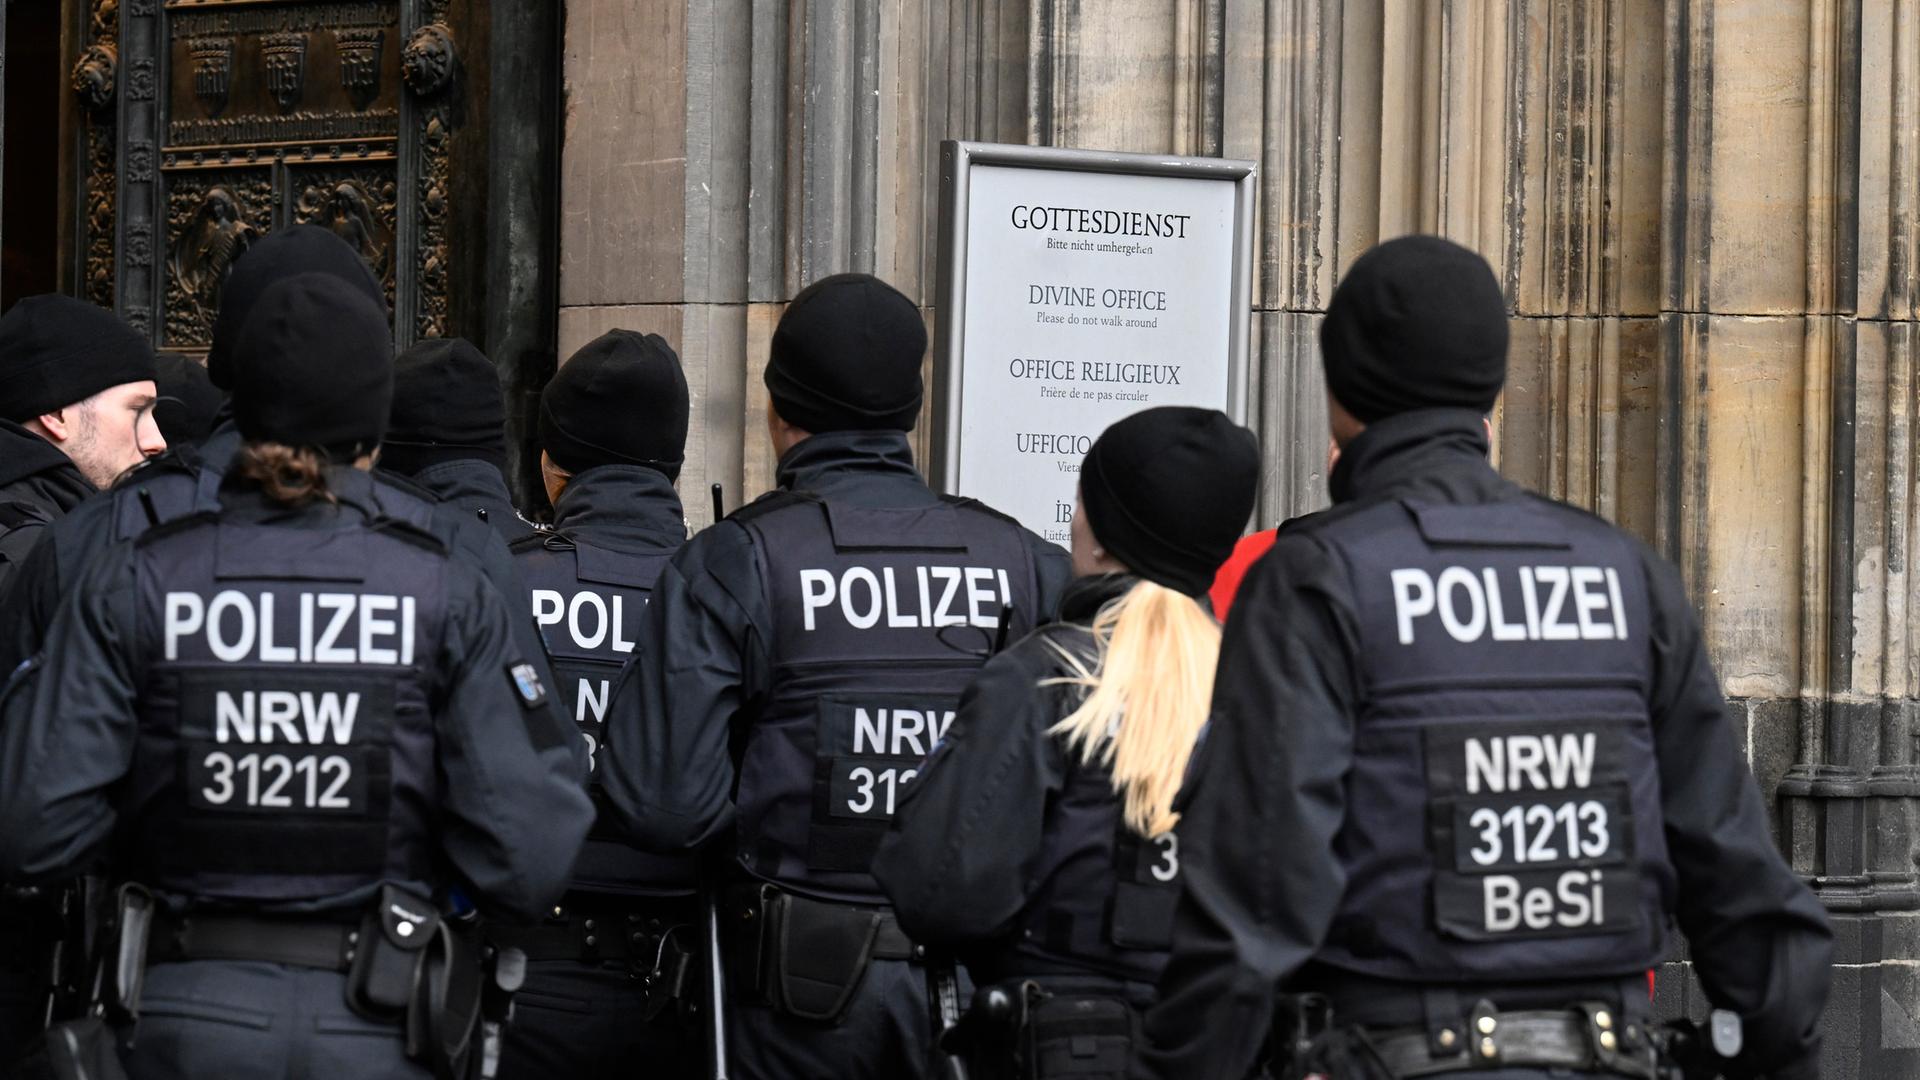 Polizisten gehen im Eingang des Kölner Doms am Weihnachtstag. Aufgrund von Hinweisen auf einen geplanten islamistischen Anschlag hat die Polizei die SicherheitsmaÃnahmen hochgefahren.